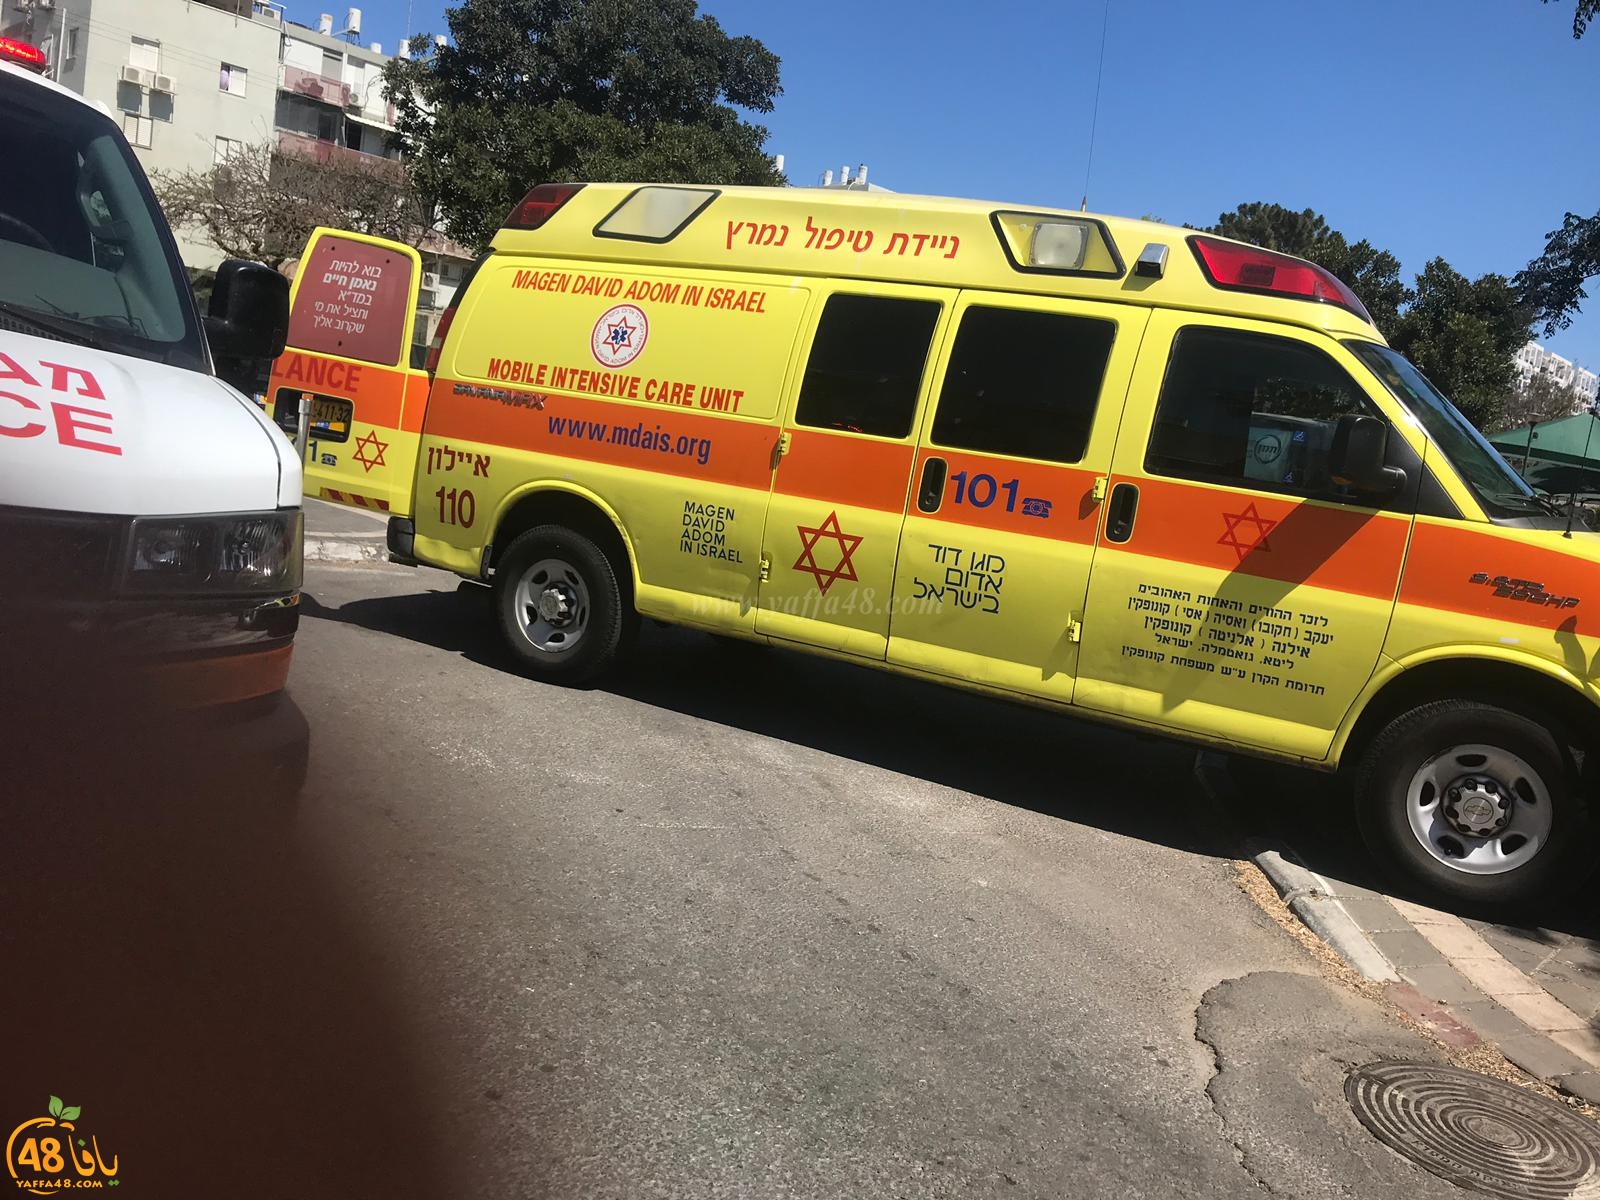  بالصور: إصابة متوسطة لطفل بحادث دهس في مدينة يافا 